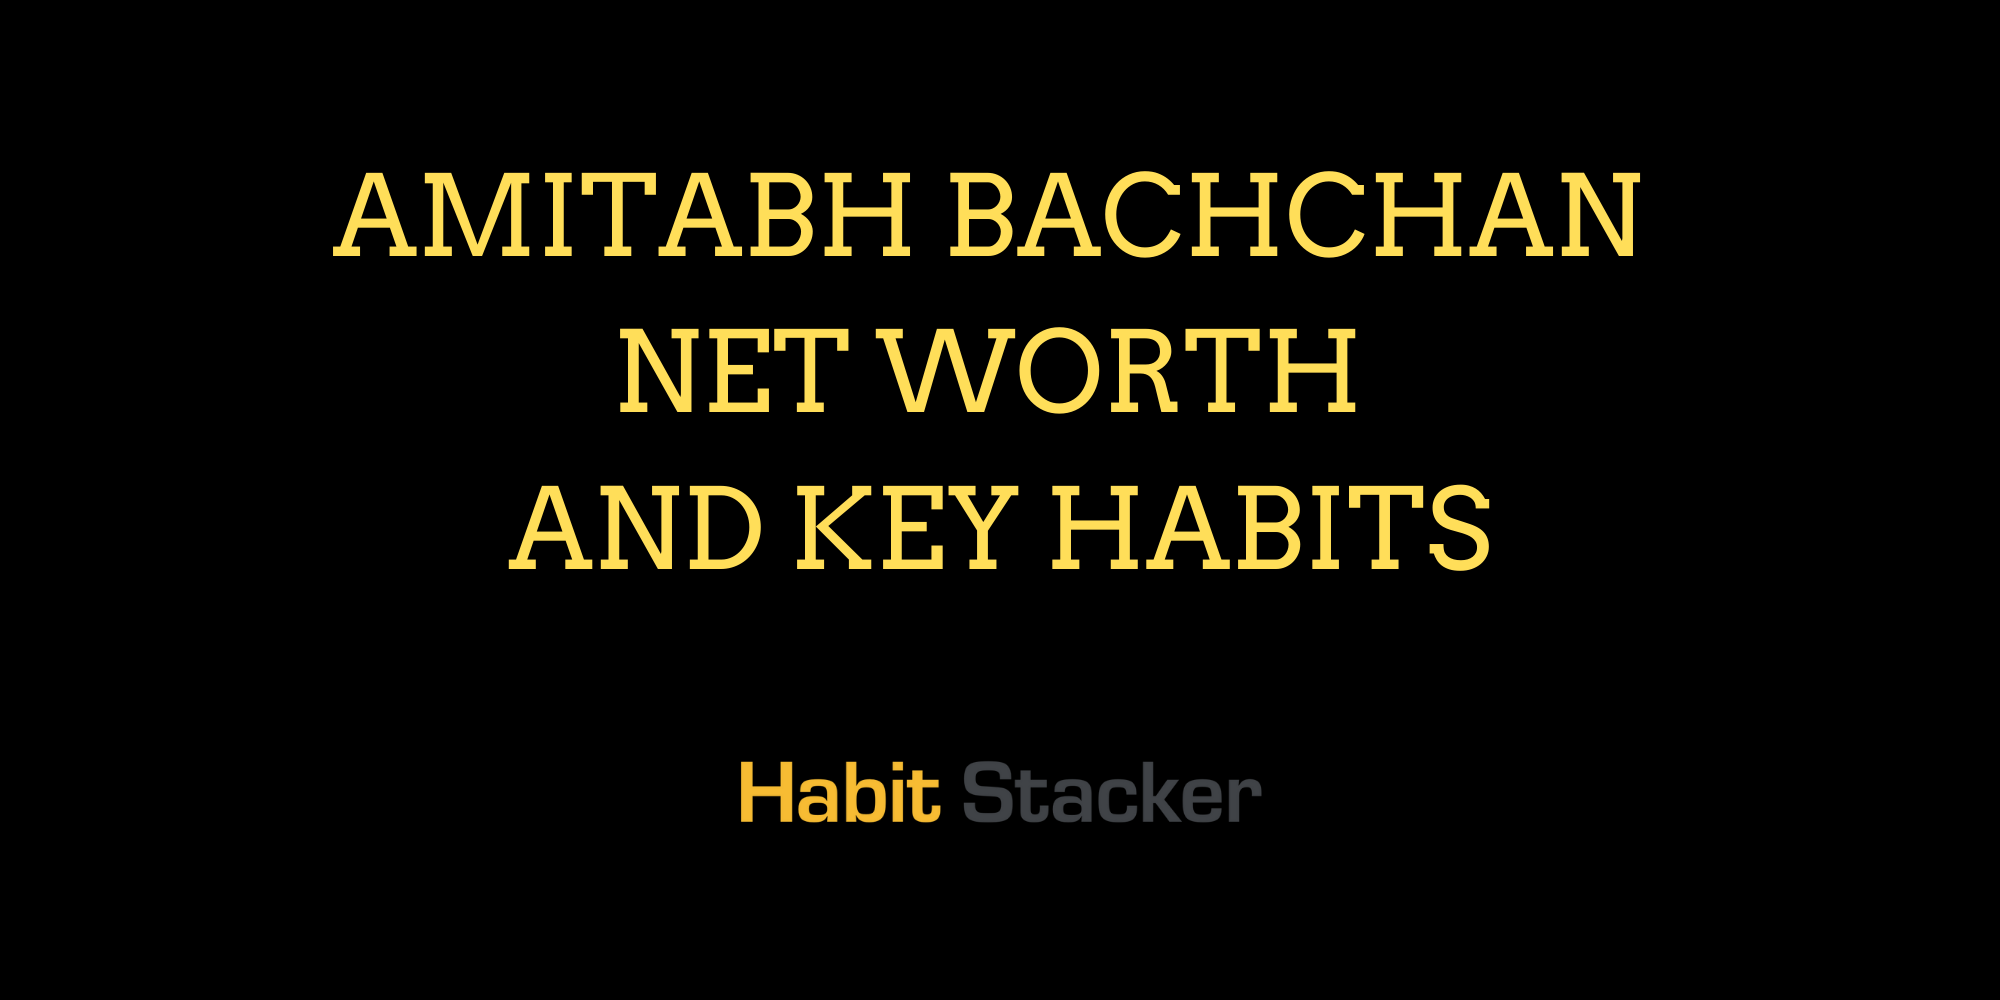 Amitabh Bachchan Net Worth and Key Habits